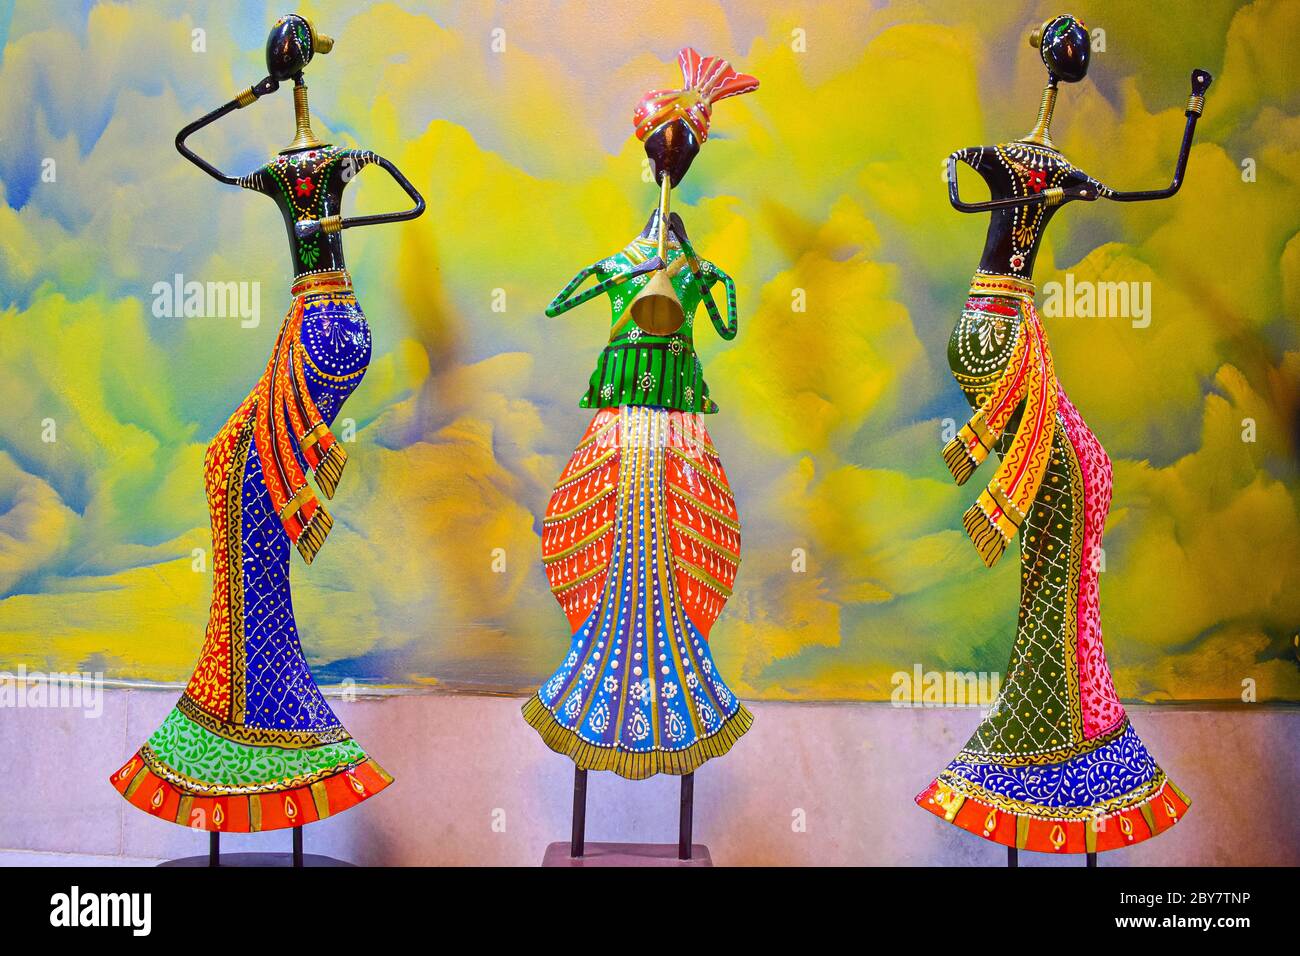 Metall Handwerk Puppen von lebendigen Farben in Rajasthan in Indien. Ethnische Kleidung und Kultur von Rajasthan spiegelt sich in den Puppen Stockfoto